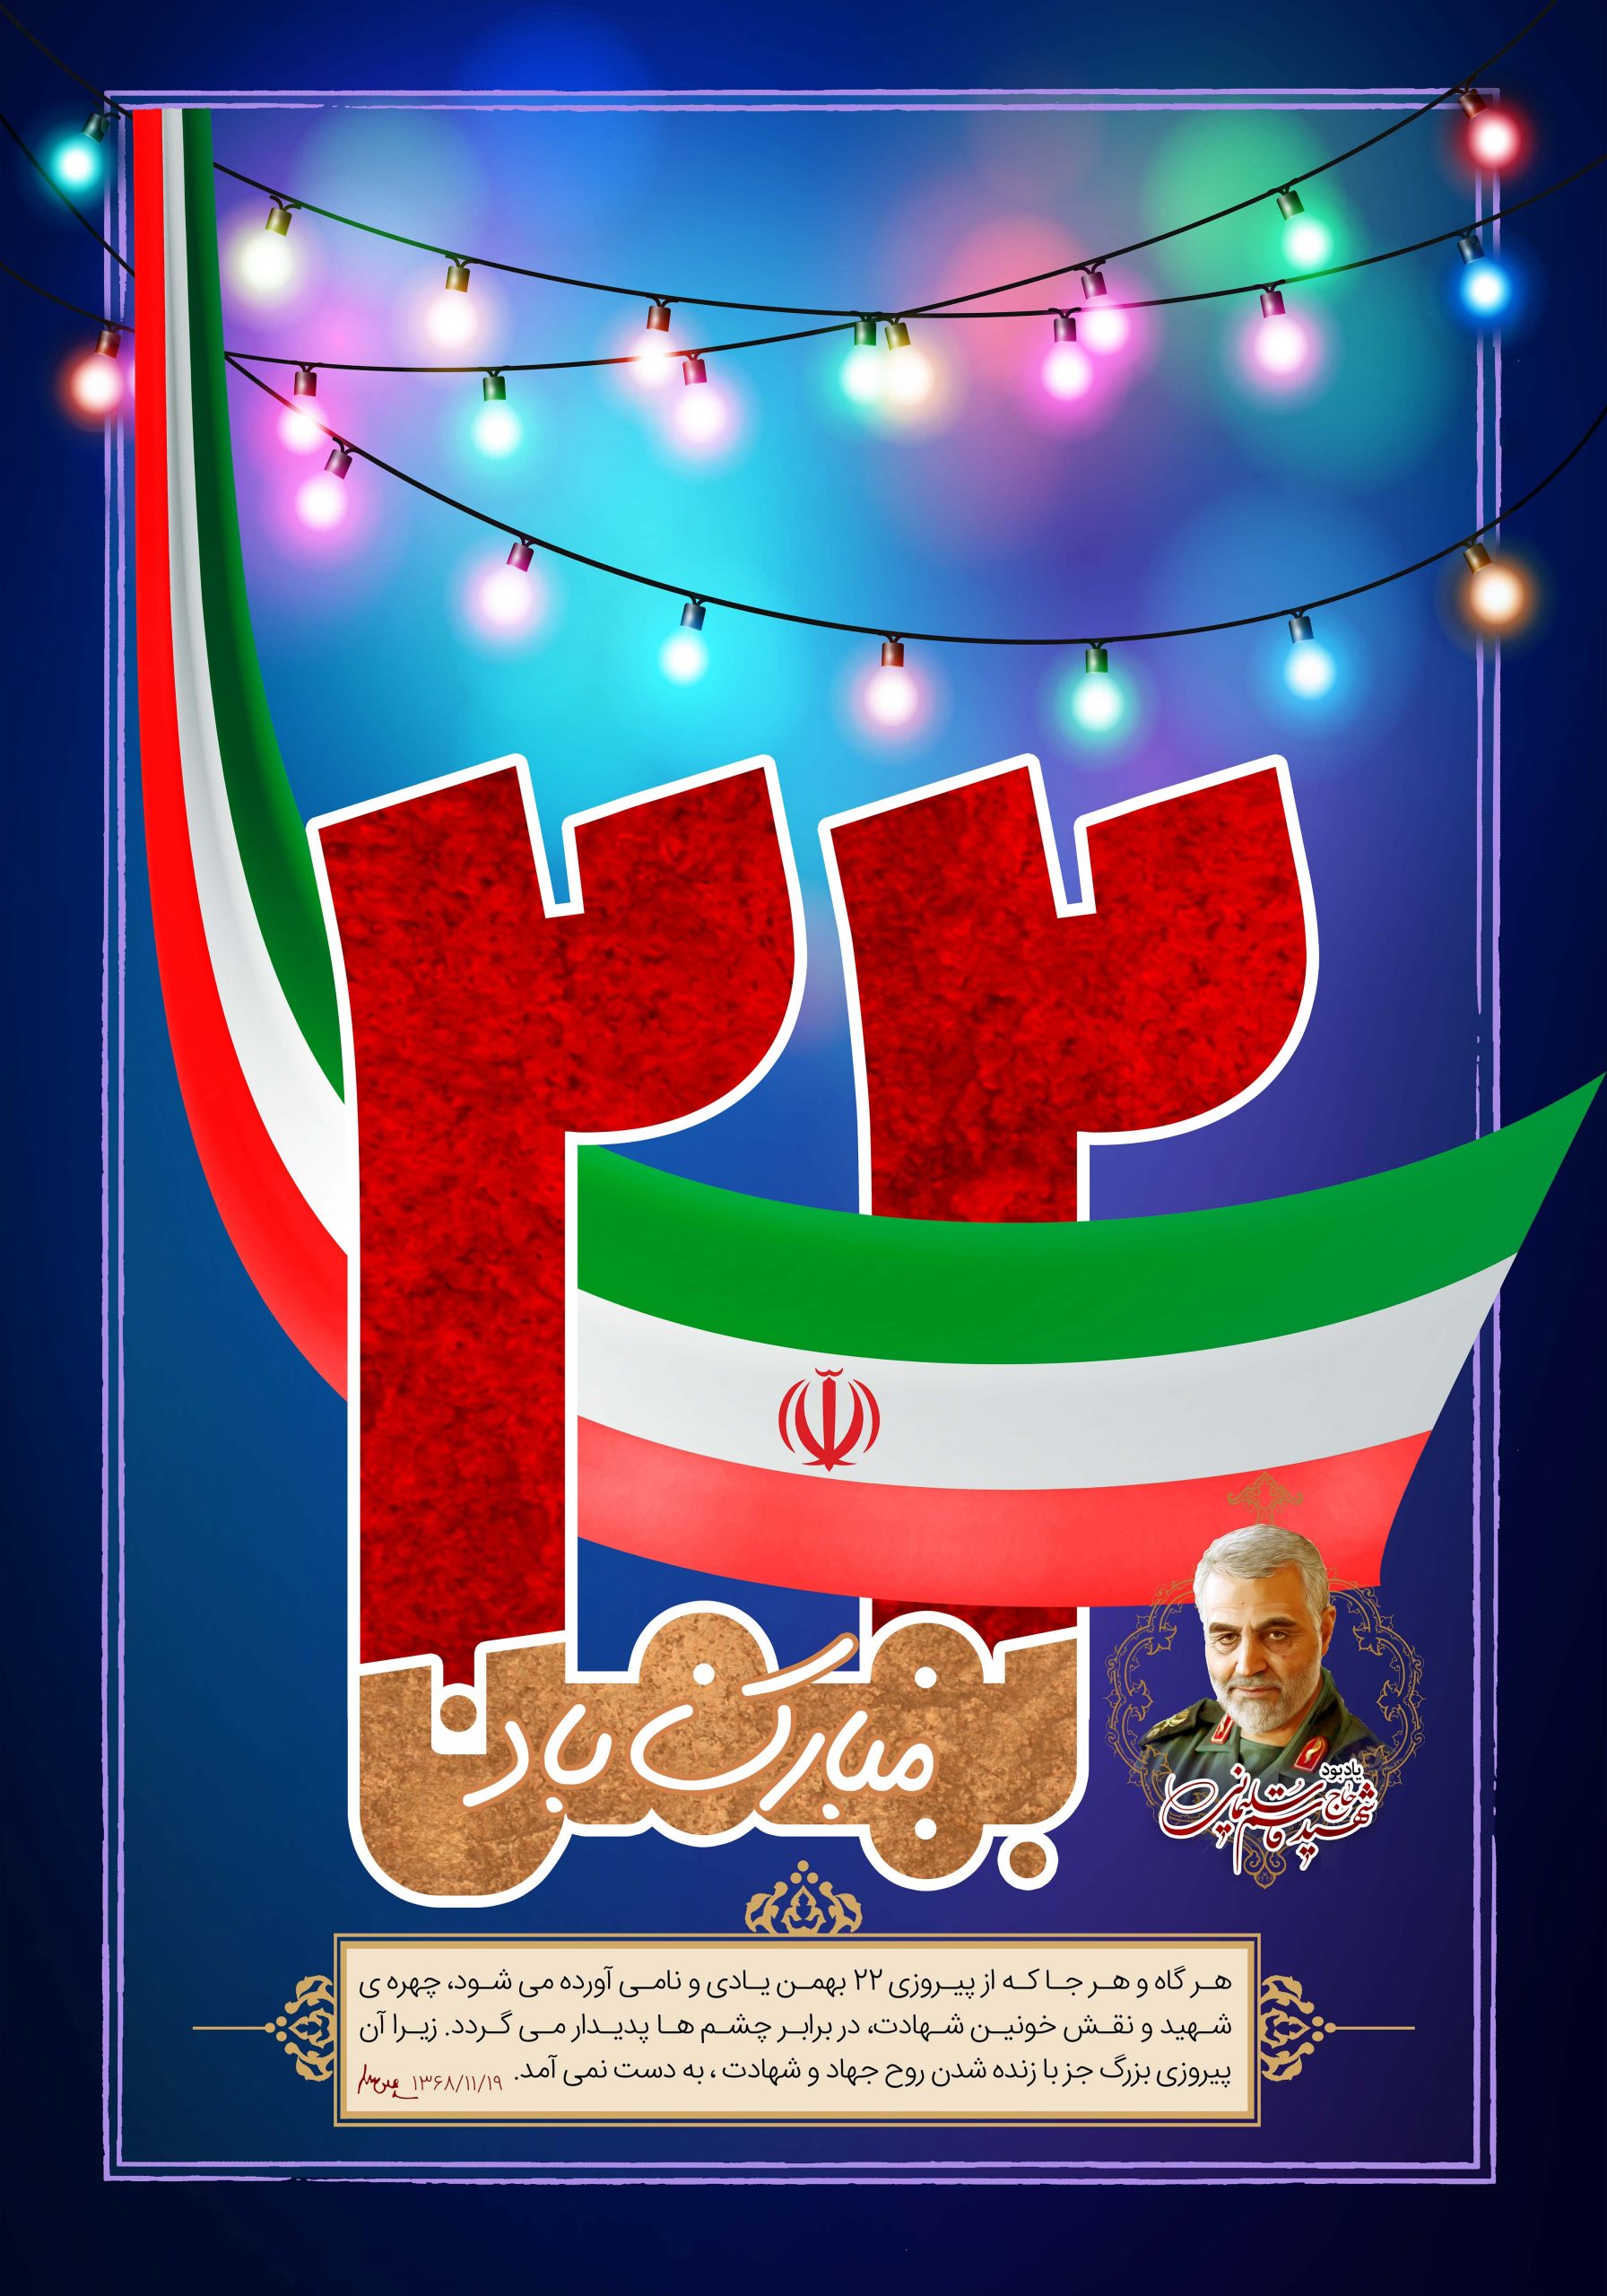 ۲۲بهمن روز پیروزی و سربلندی باشکوه ملت جمهوری اسلامی ایران